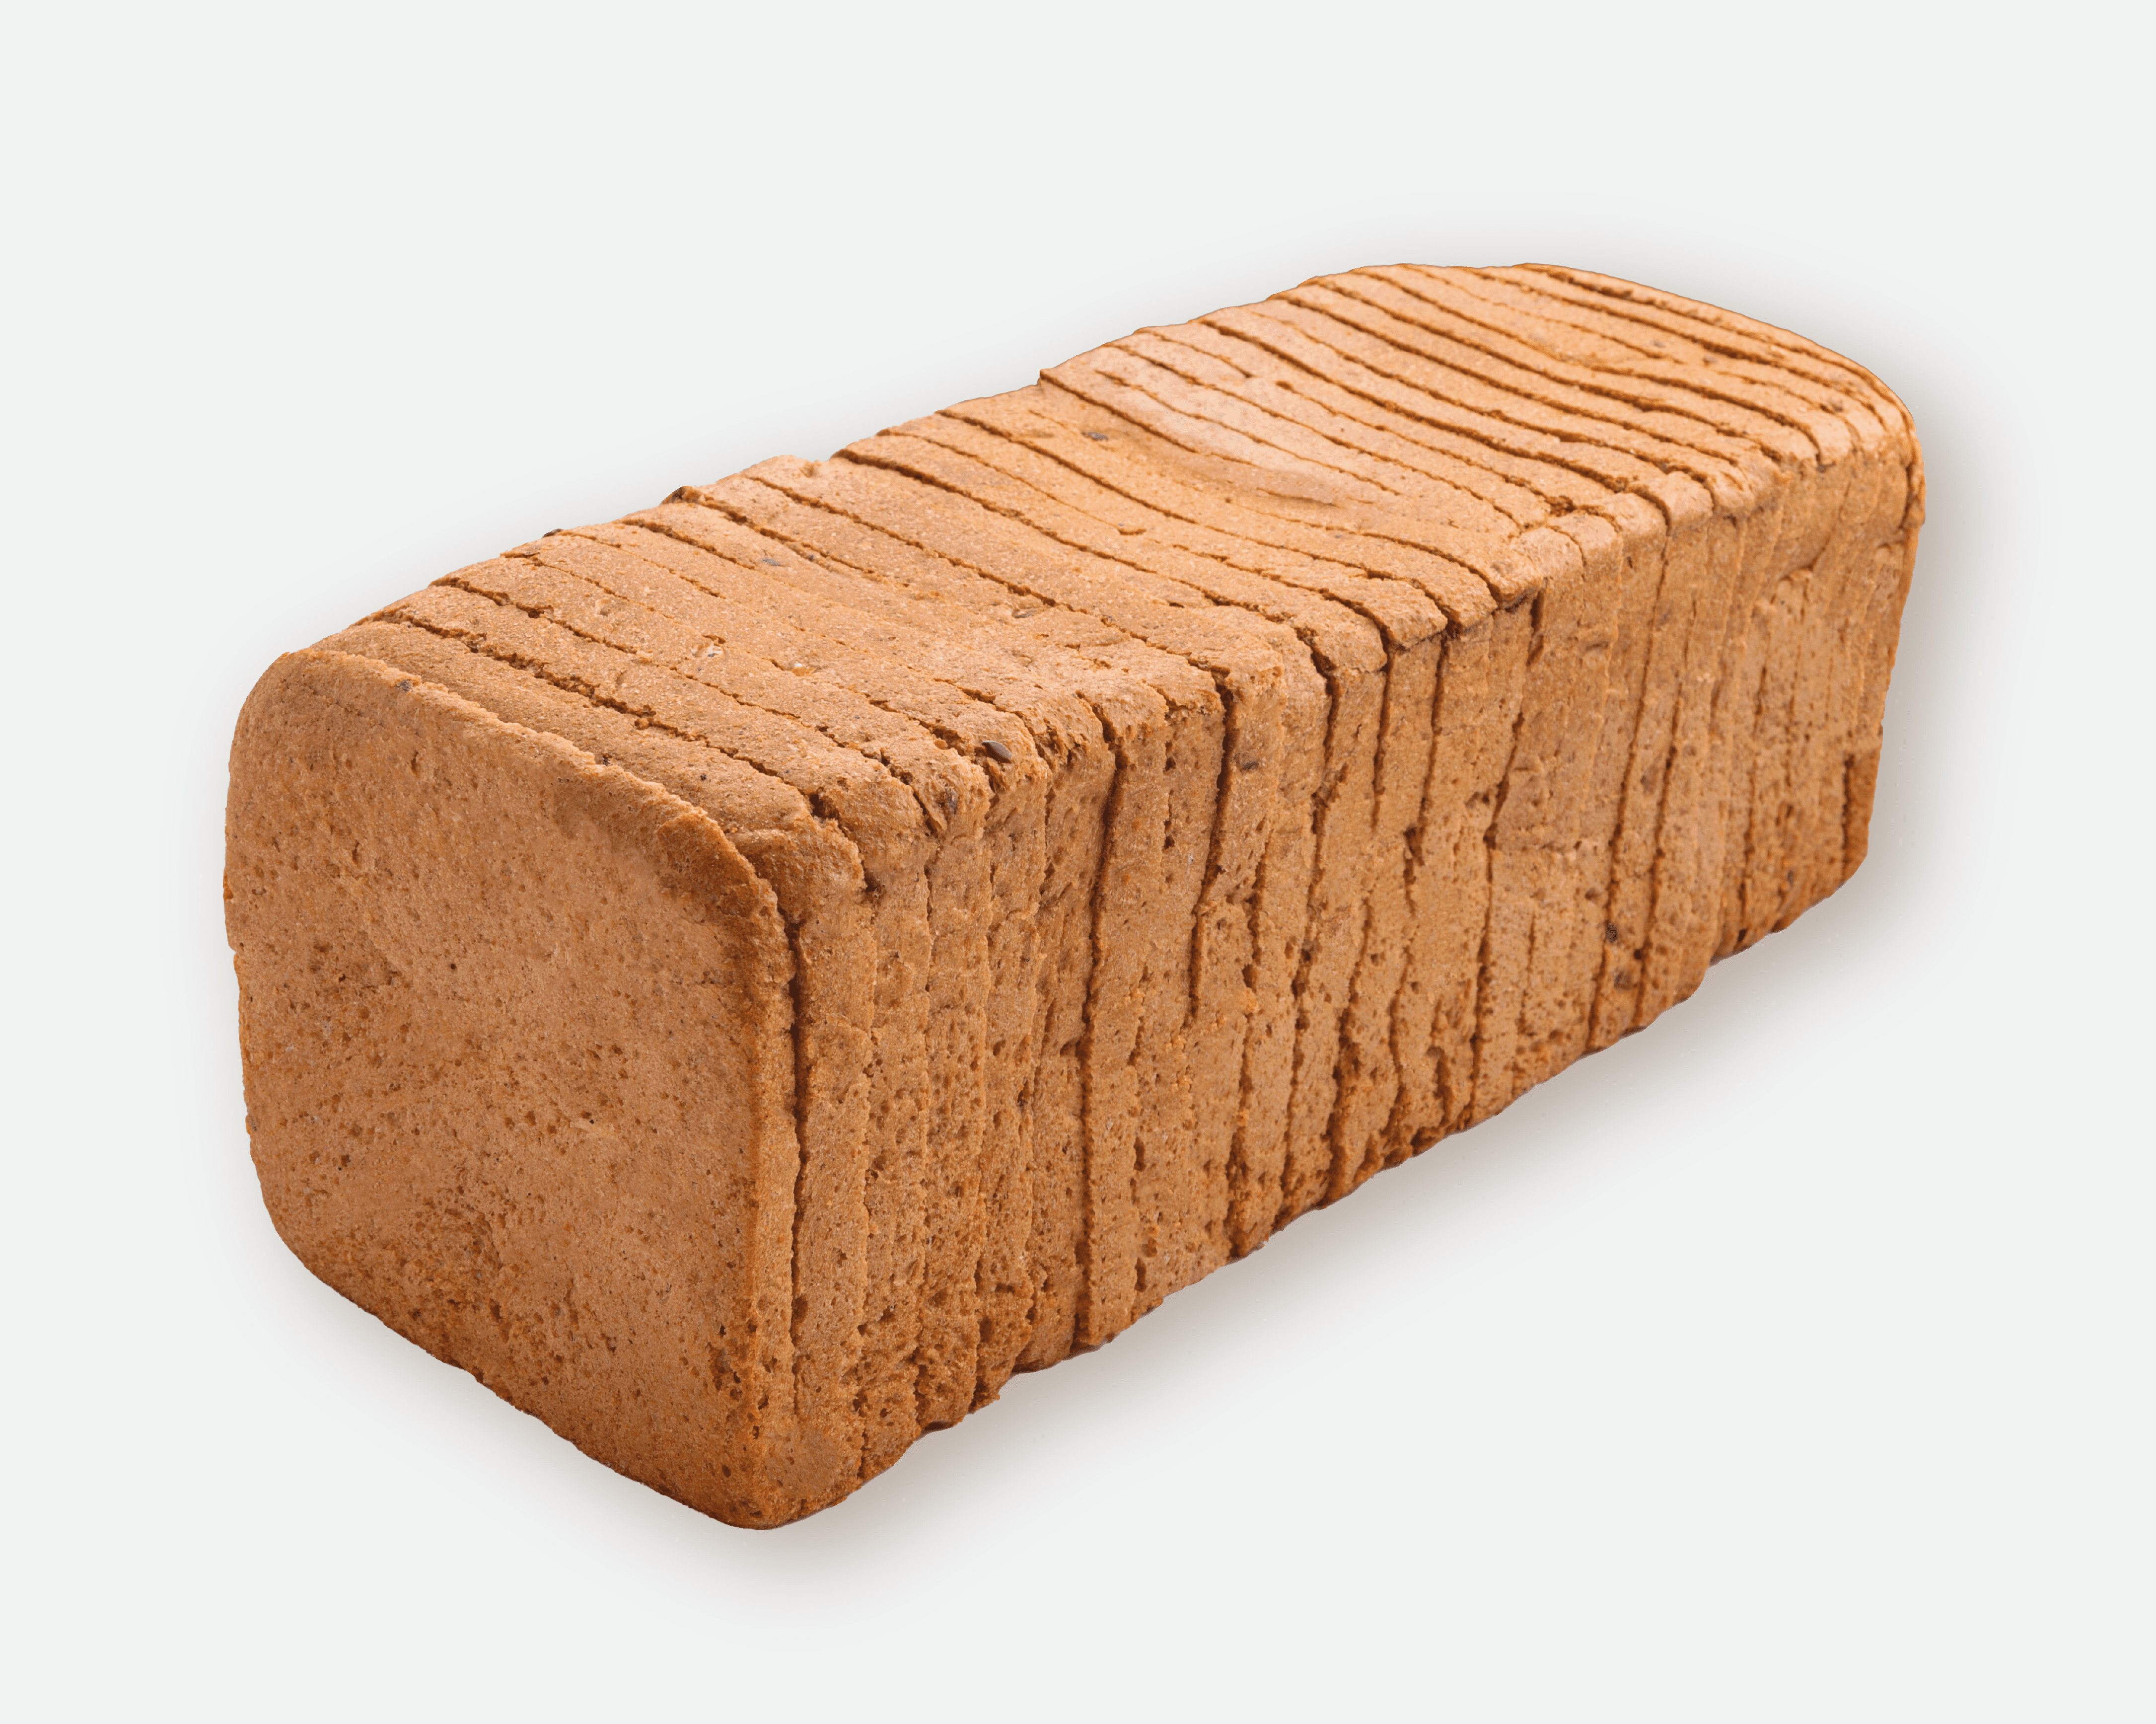 Хлеб тостовый пшенично-ржаной (нарезанный)